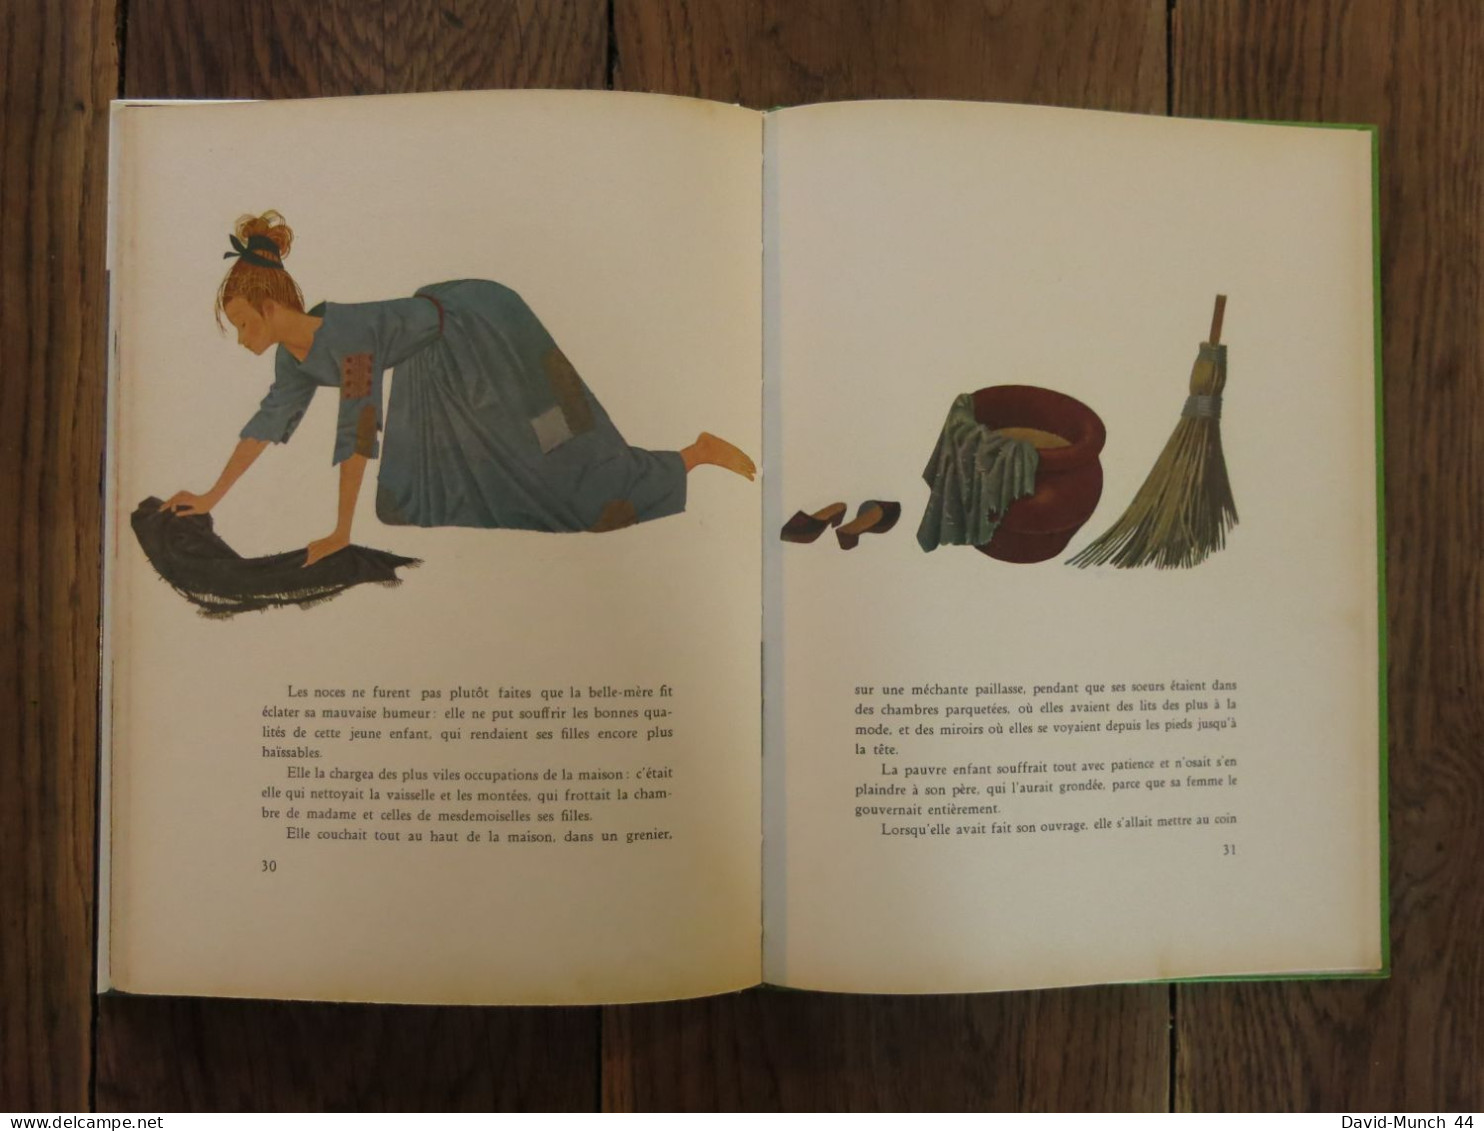 Le chat botté & Cendrillon de Perrault, illustré par Una. O.D.E.J., Collection Merveilles. 1966